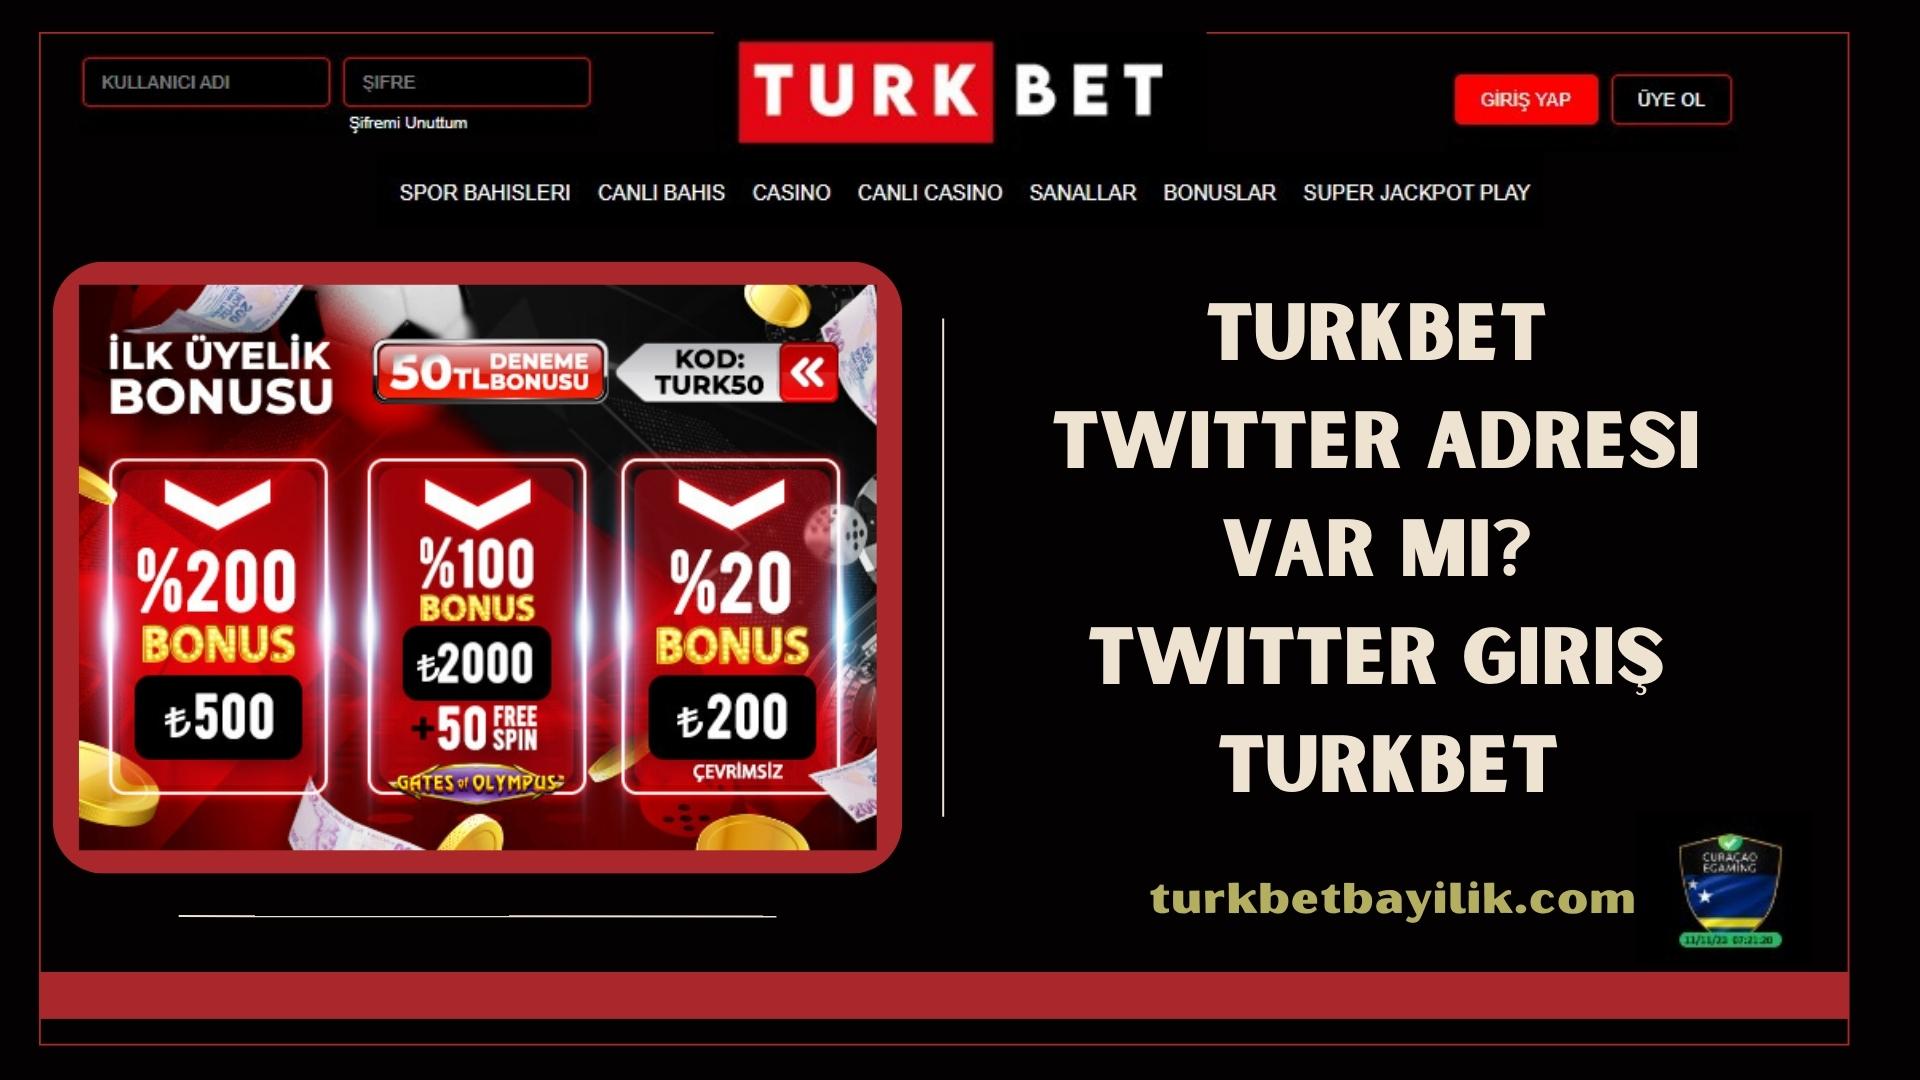 Turkbet Twitter Adresi Var mı? Twitter Giriş Turkbet